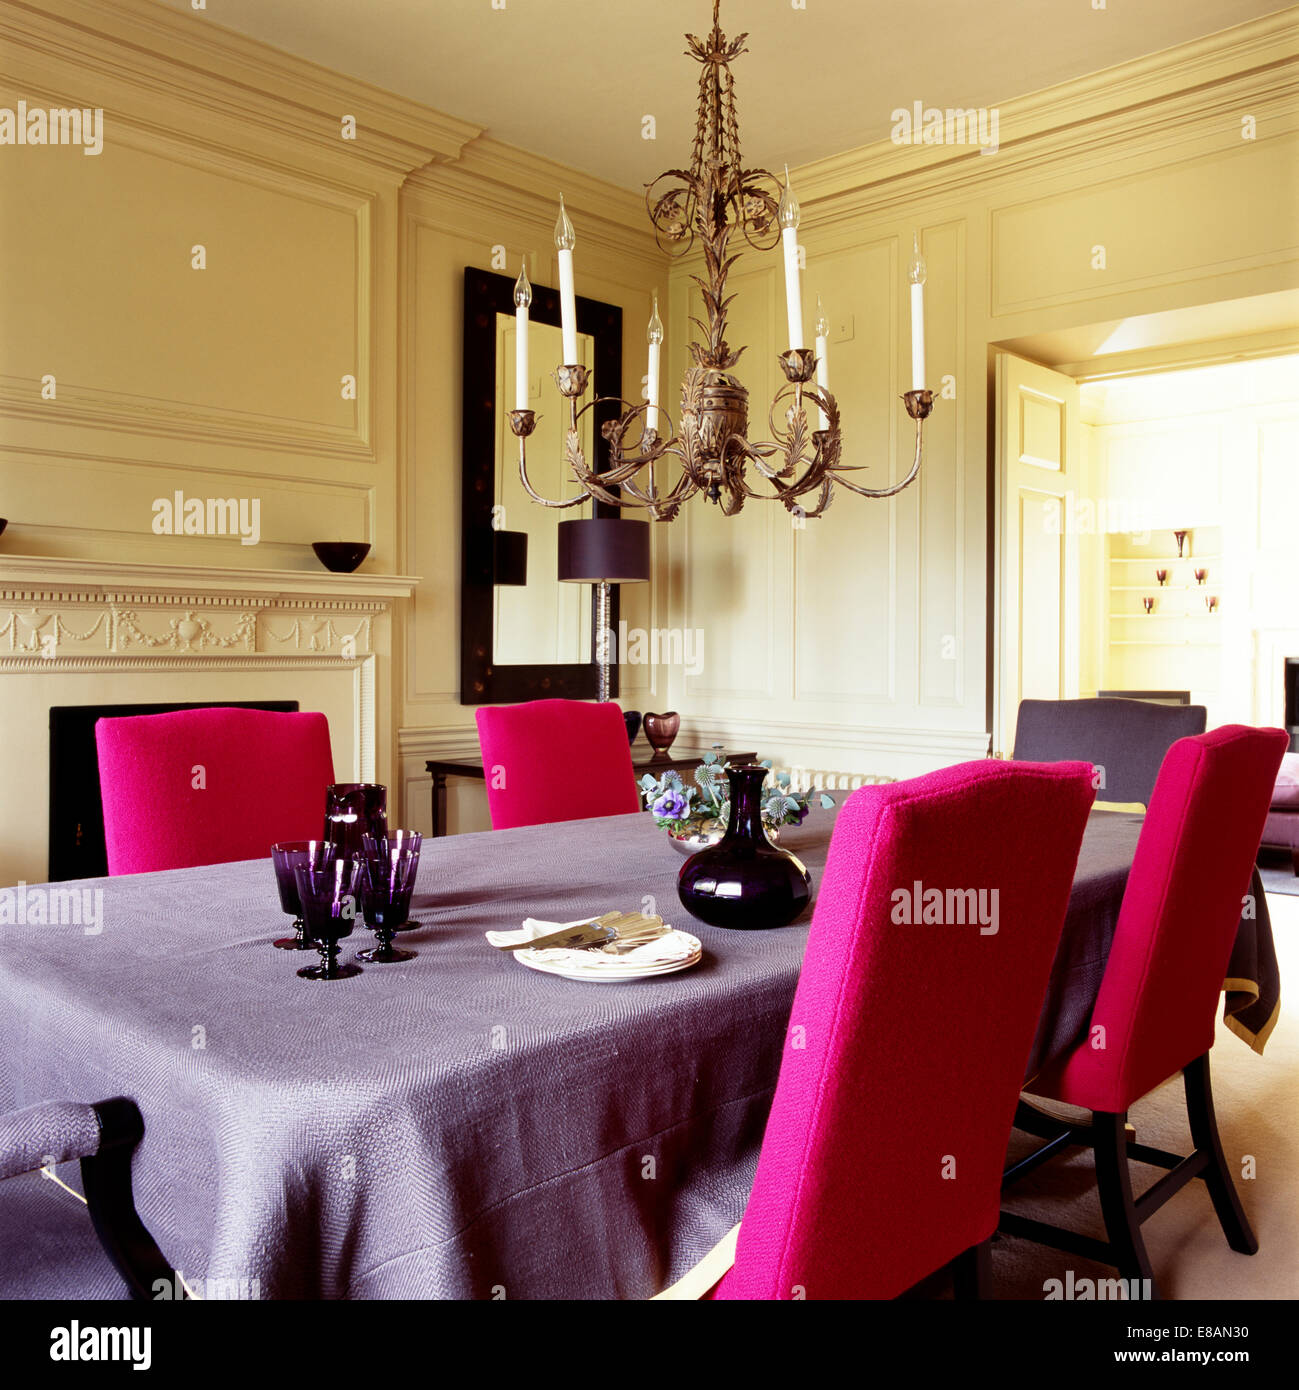 Lustre orné en salle à manger avec de confortables chaises de couleur rose vif et mauve pâle cirée Banque D'Images